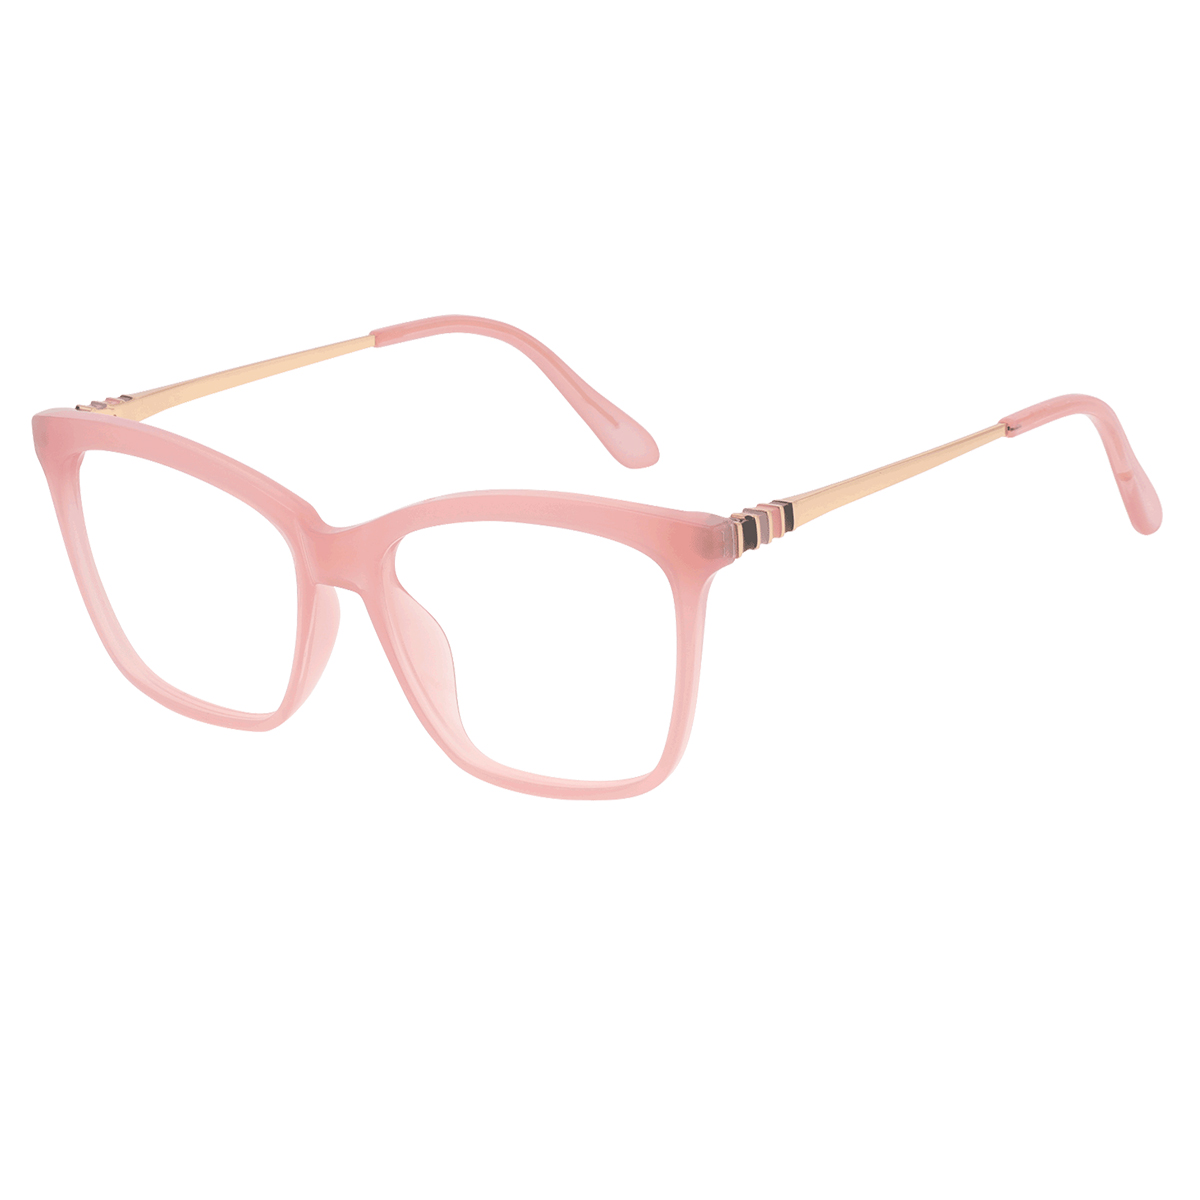 Clotho - Square Pink Reading Glasses for Men & Women